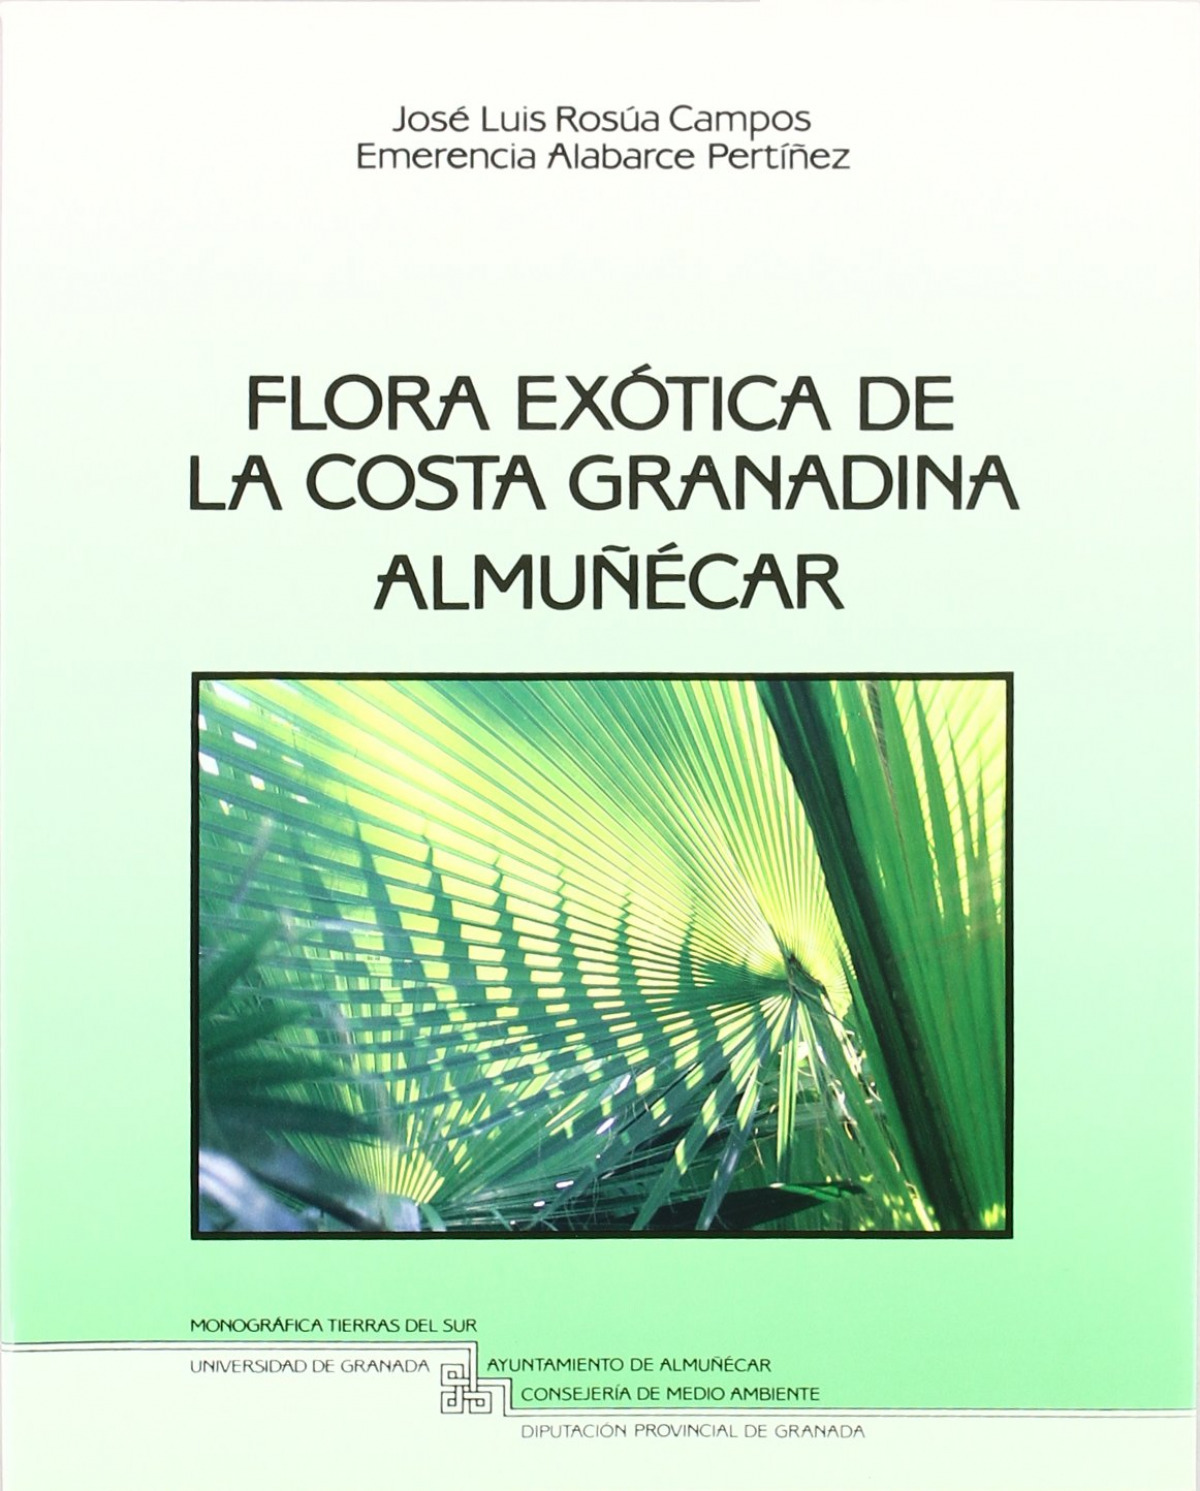 Flora exótica de la costa granadina Almuñecar - Rosua Campos, J. L/Alabarce Pertíñez, E